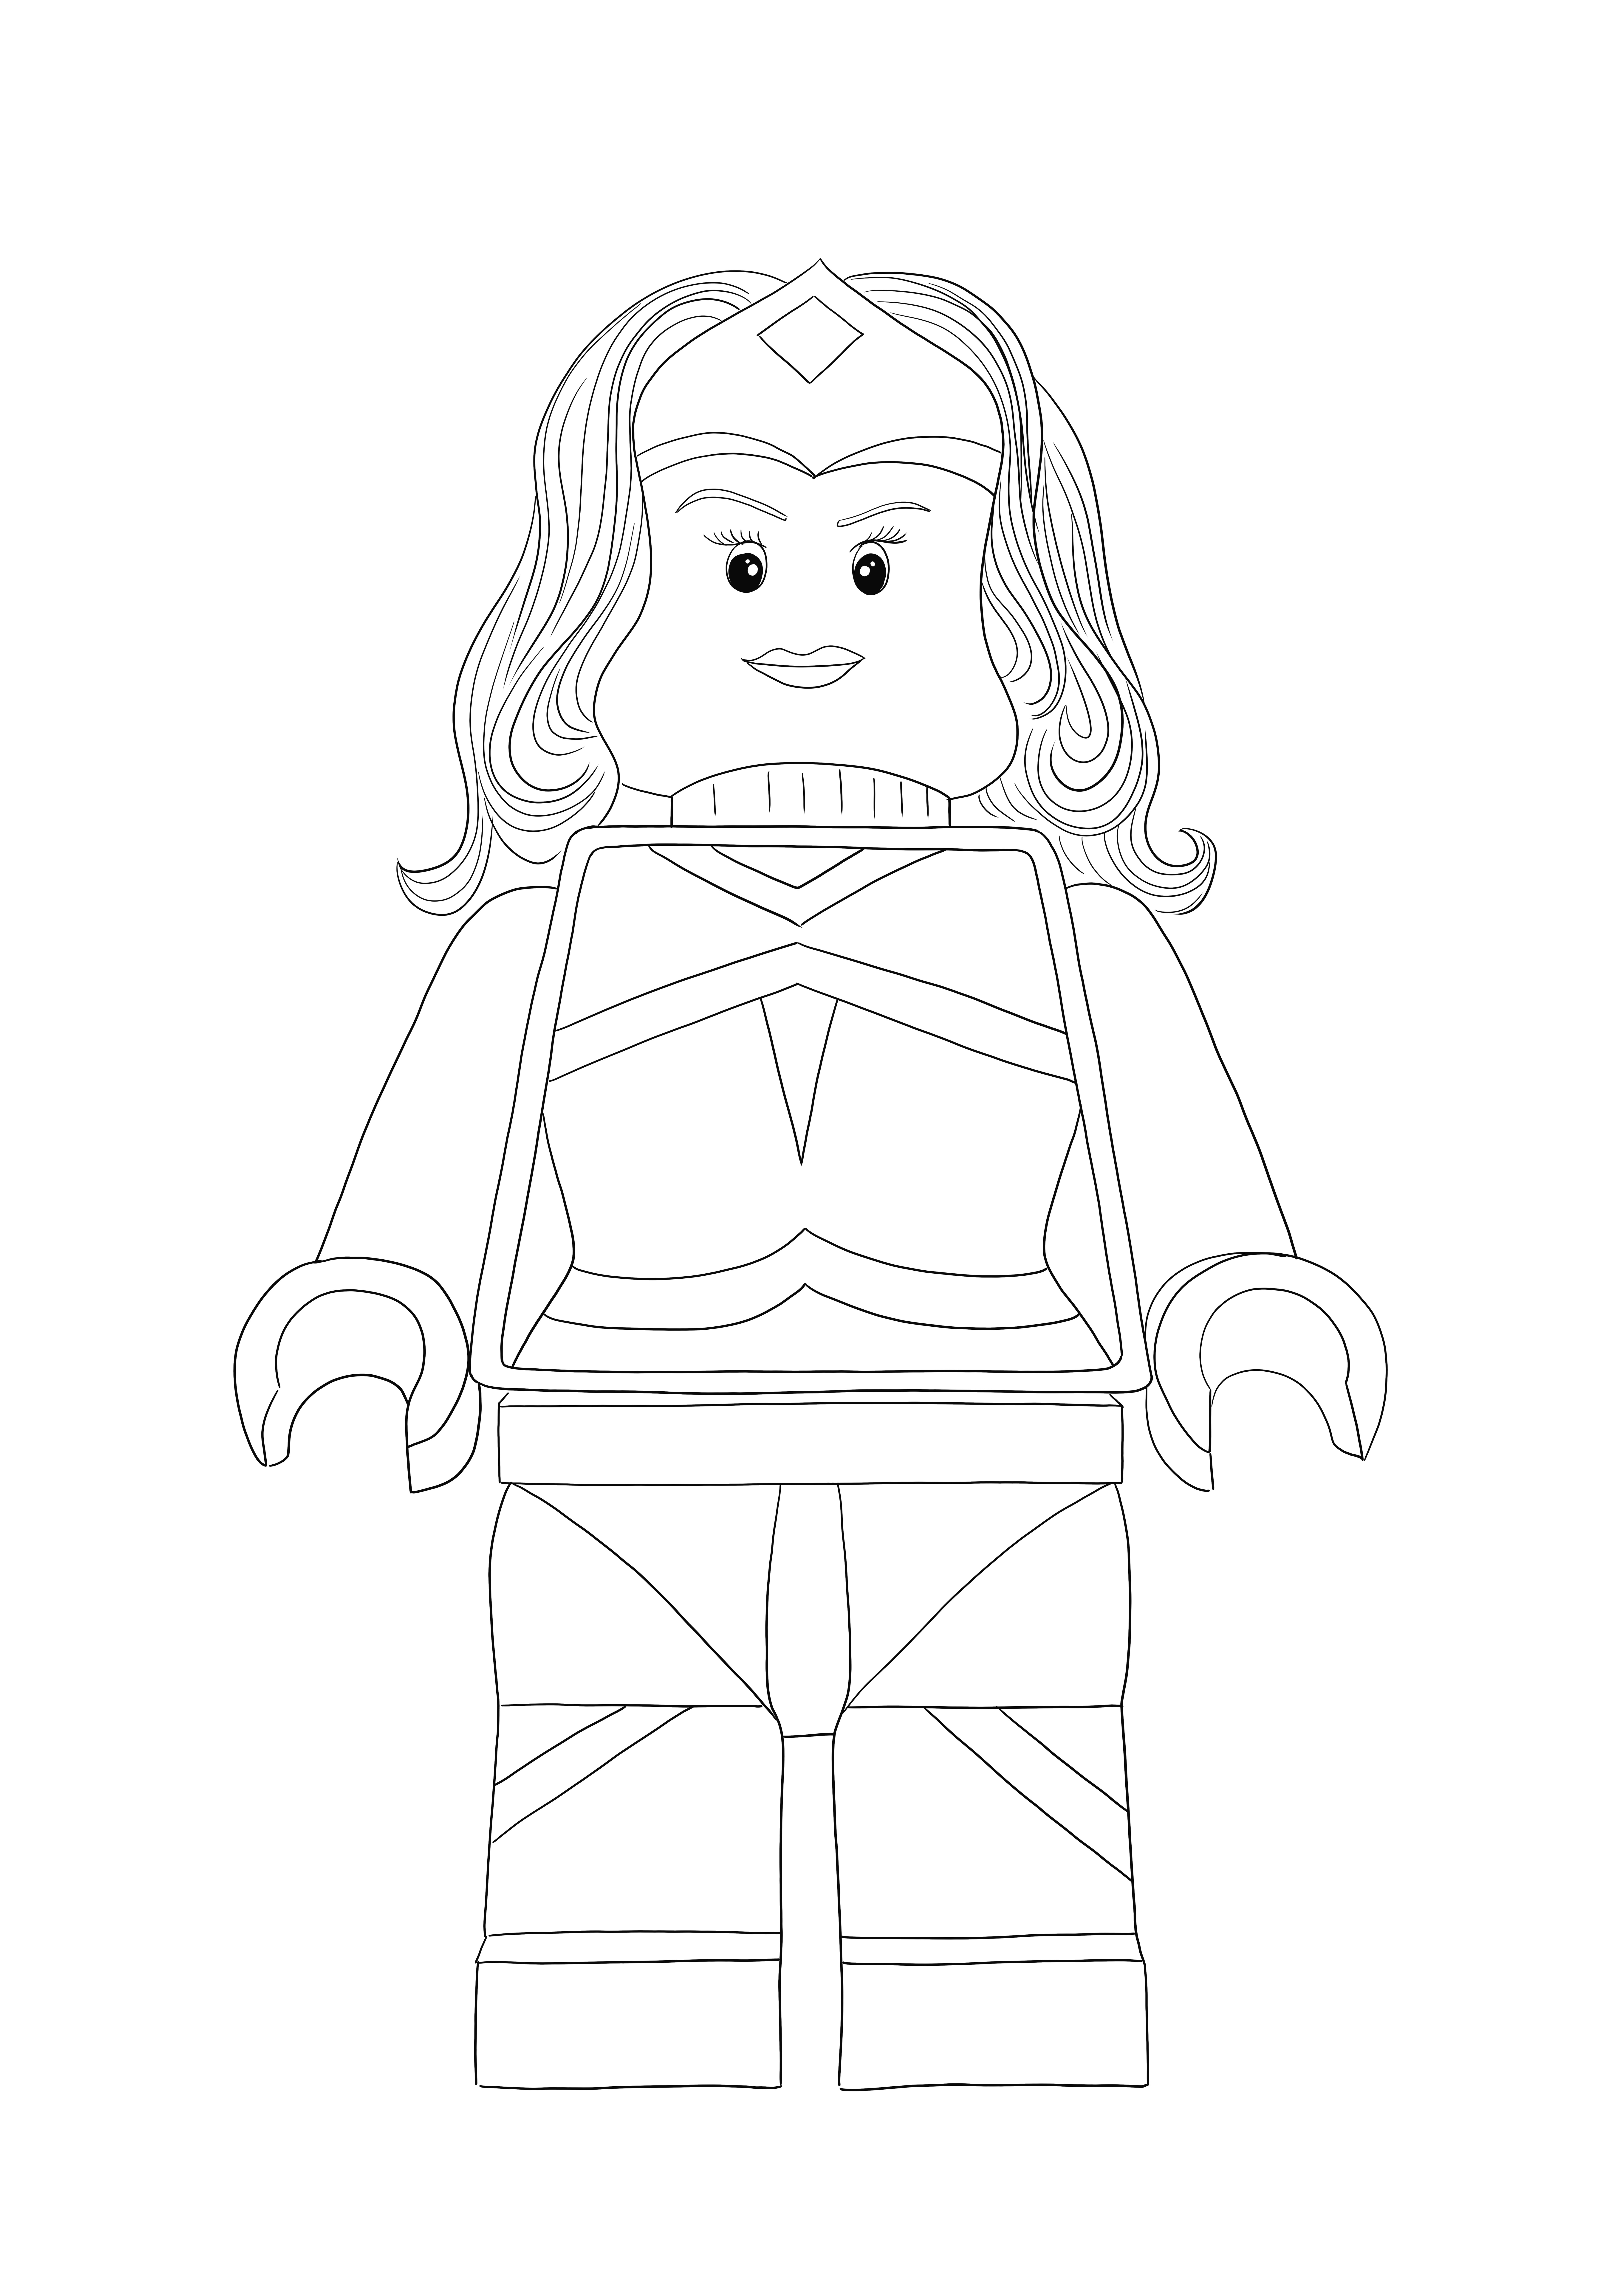 İndirmek için ücretsiz Lego Wonder Woman'ın basit renklendirmesi